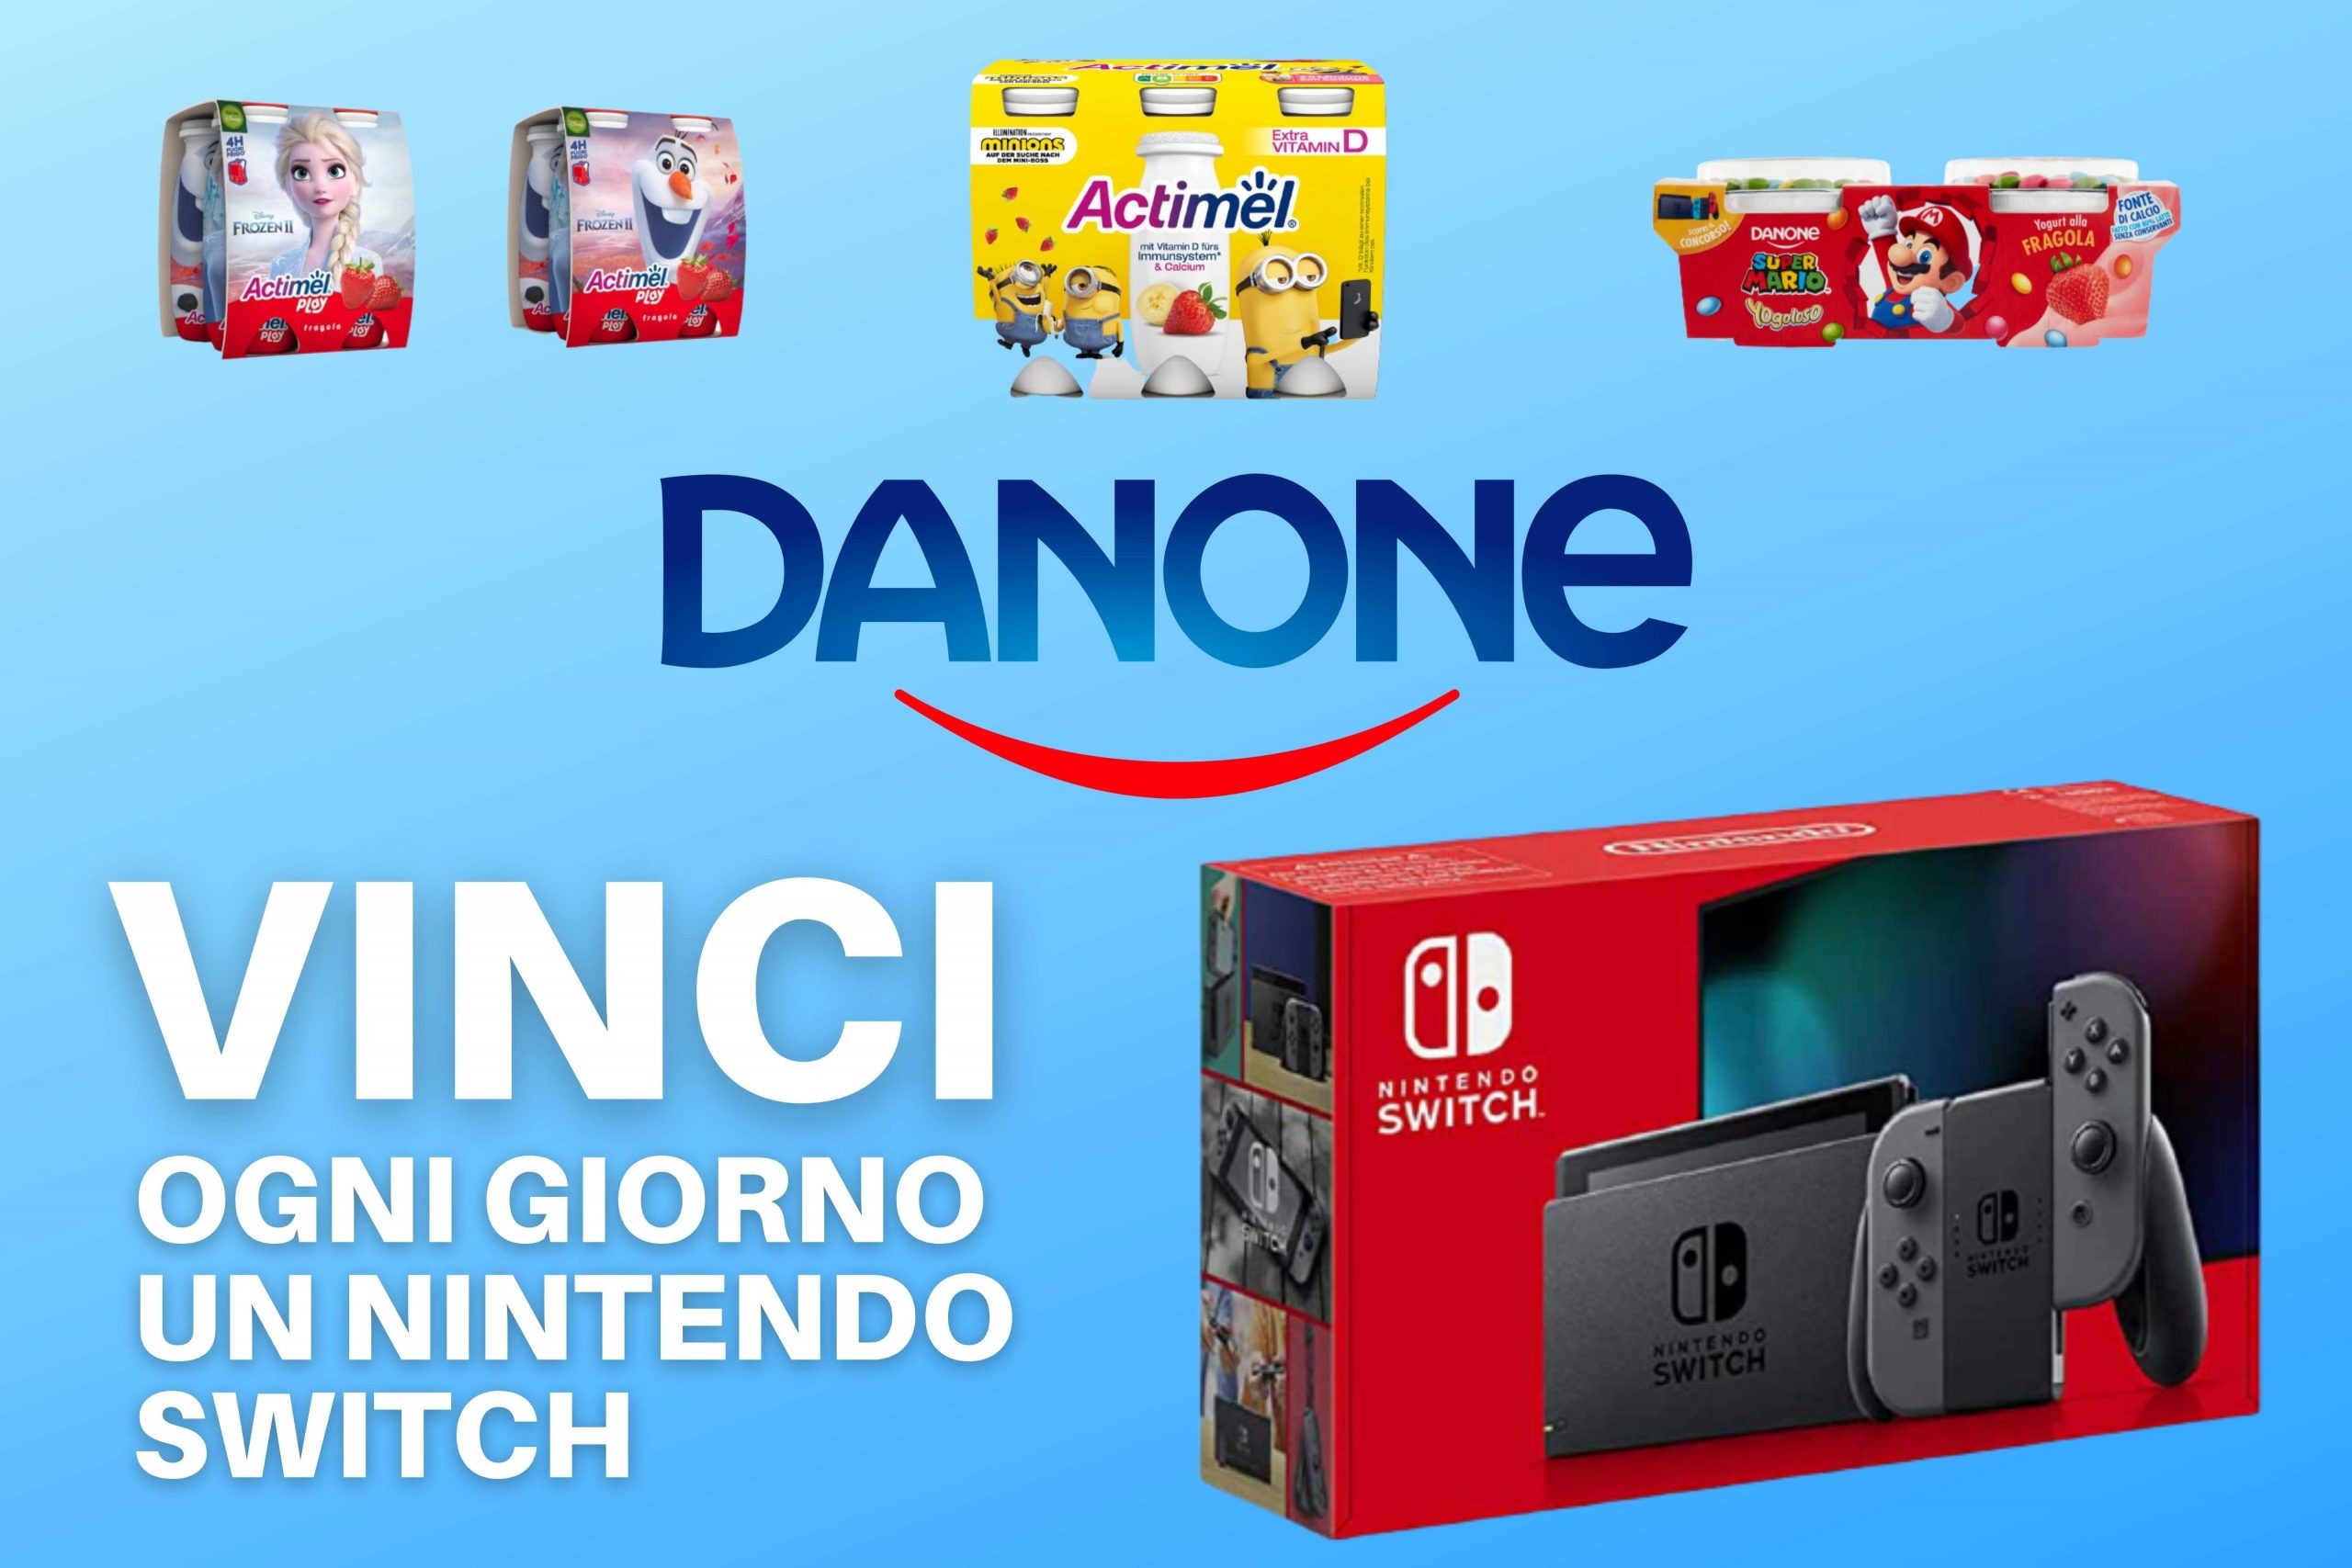 Danette, Yogoloso e Actimel: Vinci Nintendo Switch con il concorso “Che forza la tua merenda”